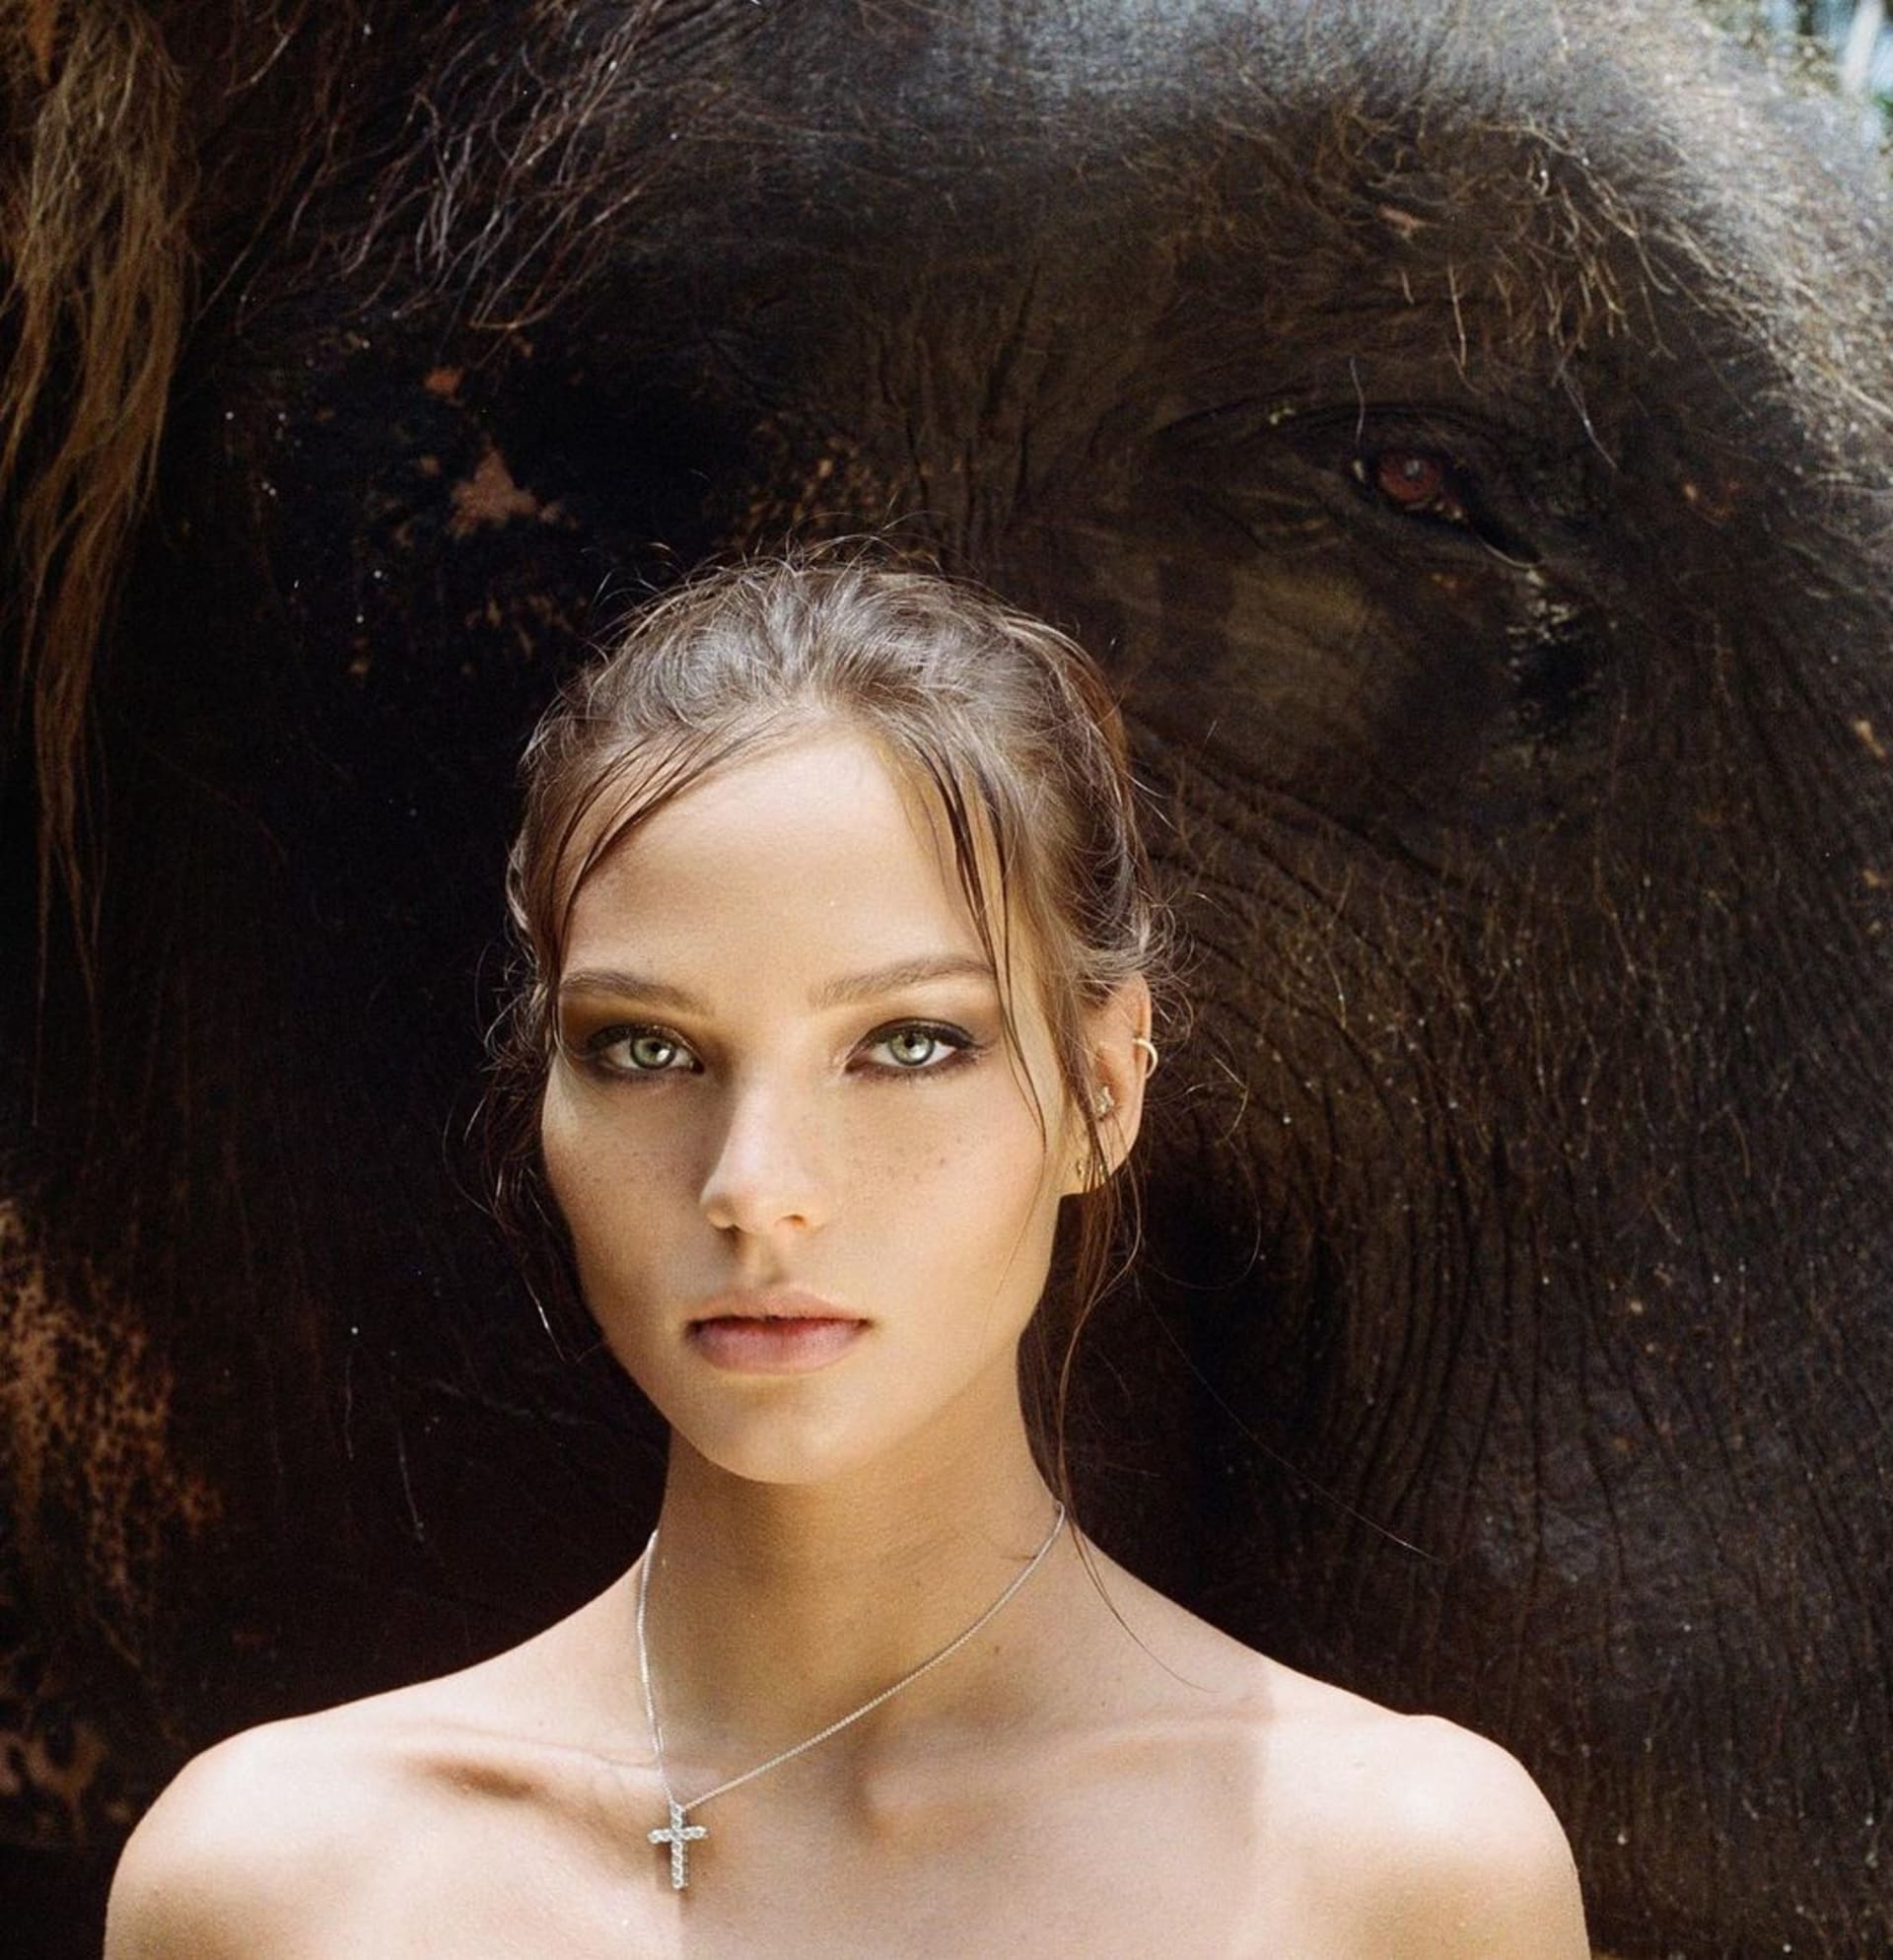 Ruská influencerka pózovala nahá na ohroženém slonovi 1